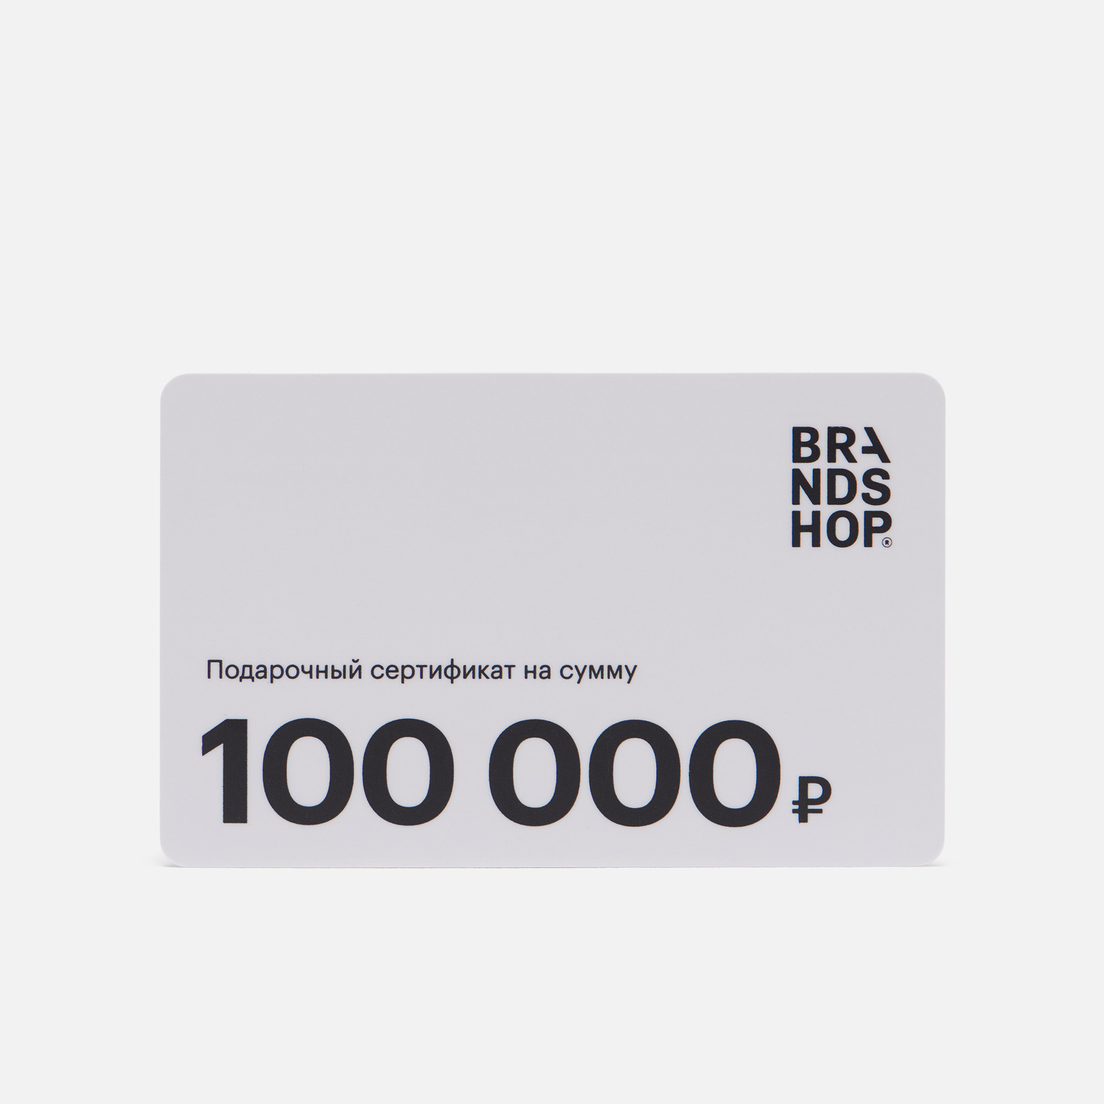 BRANDSHOP Подарочный сертификат на 100 000 руб.